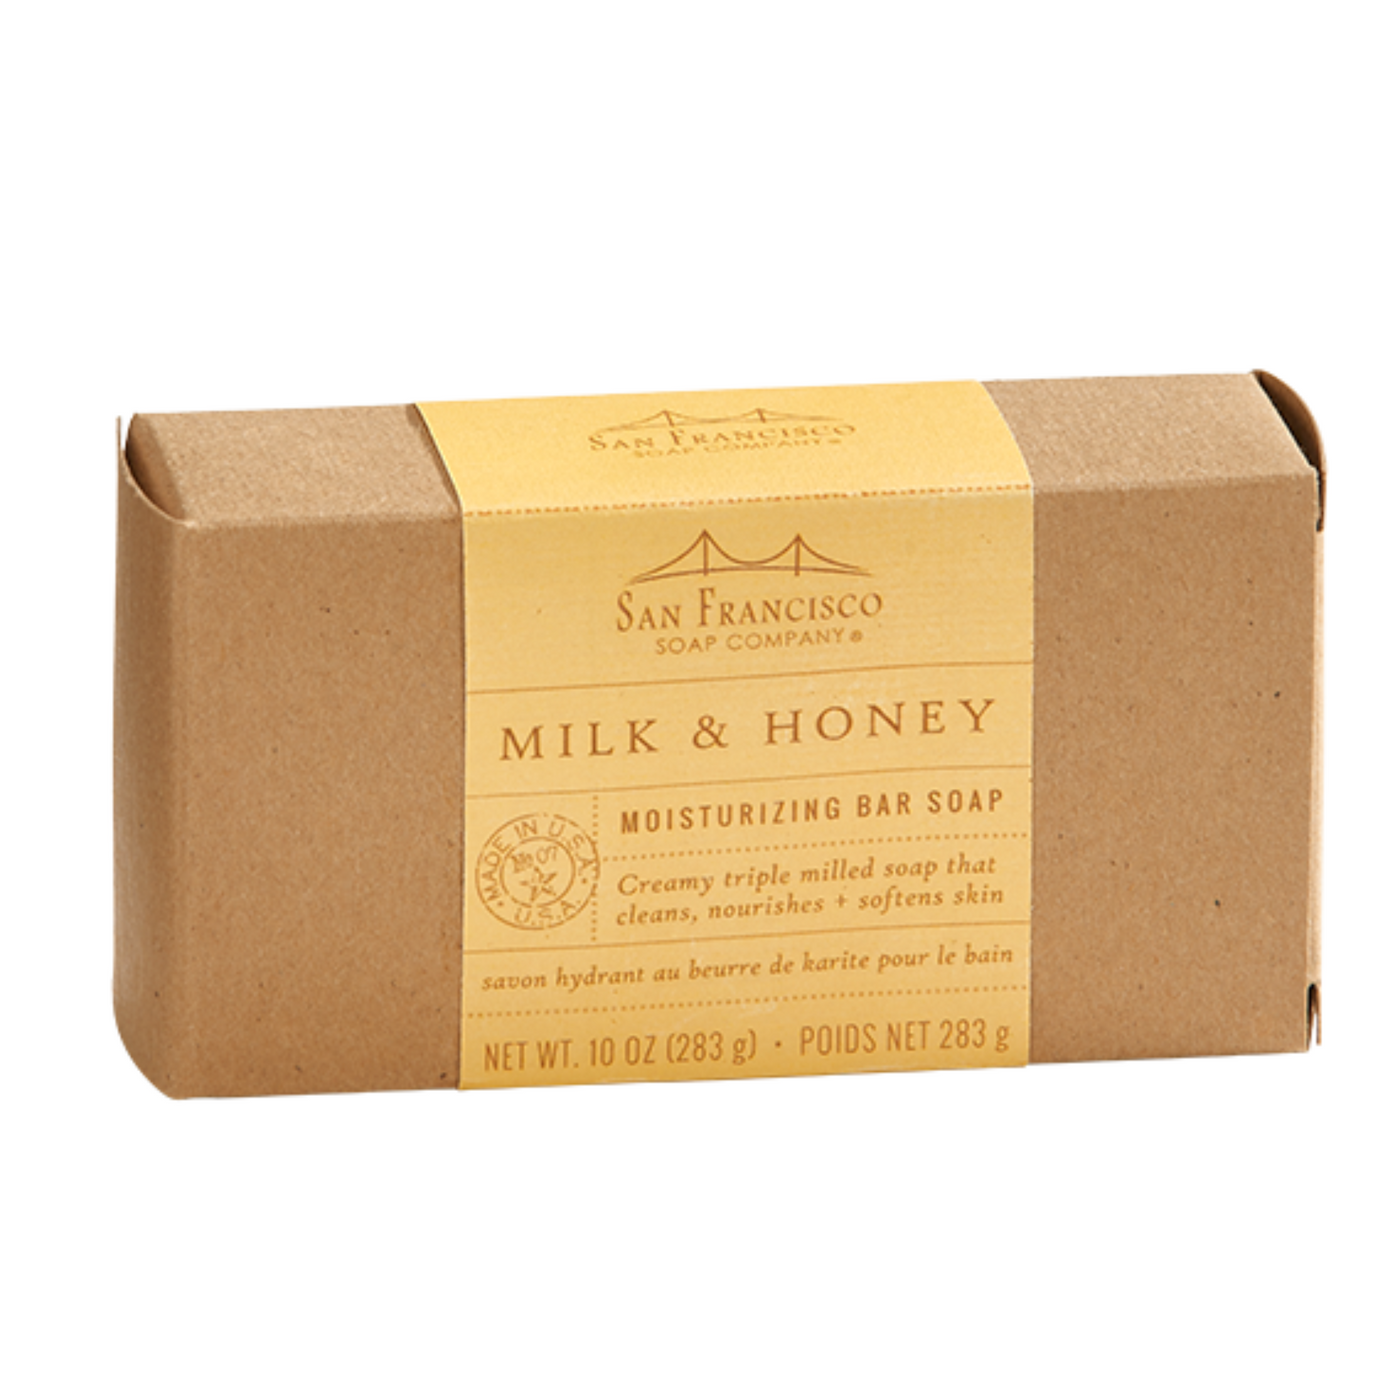 Milk & Honey Moisturizing Bar Soap